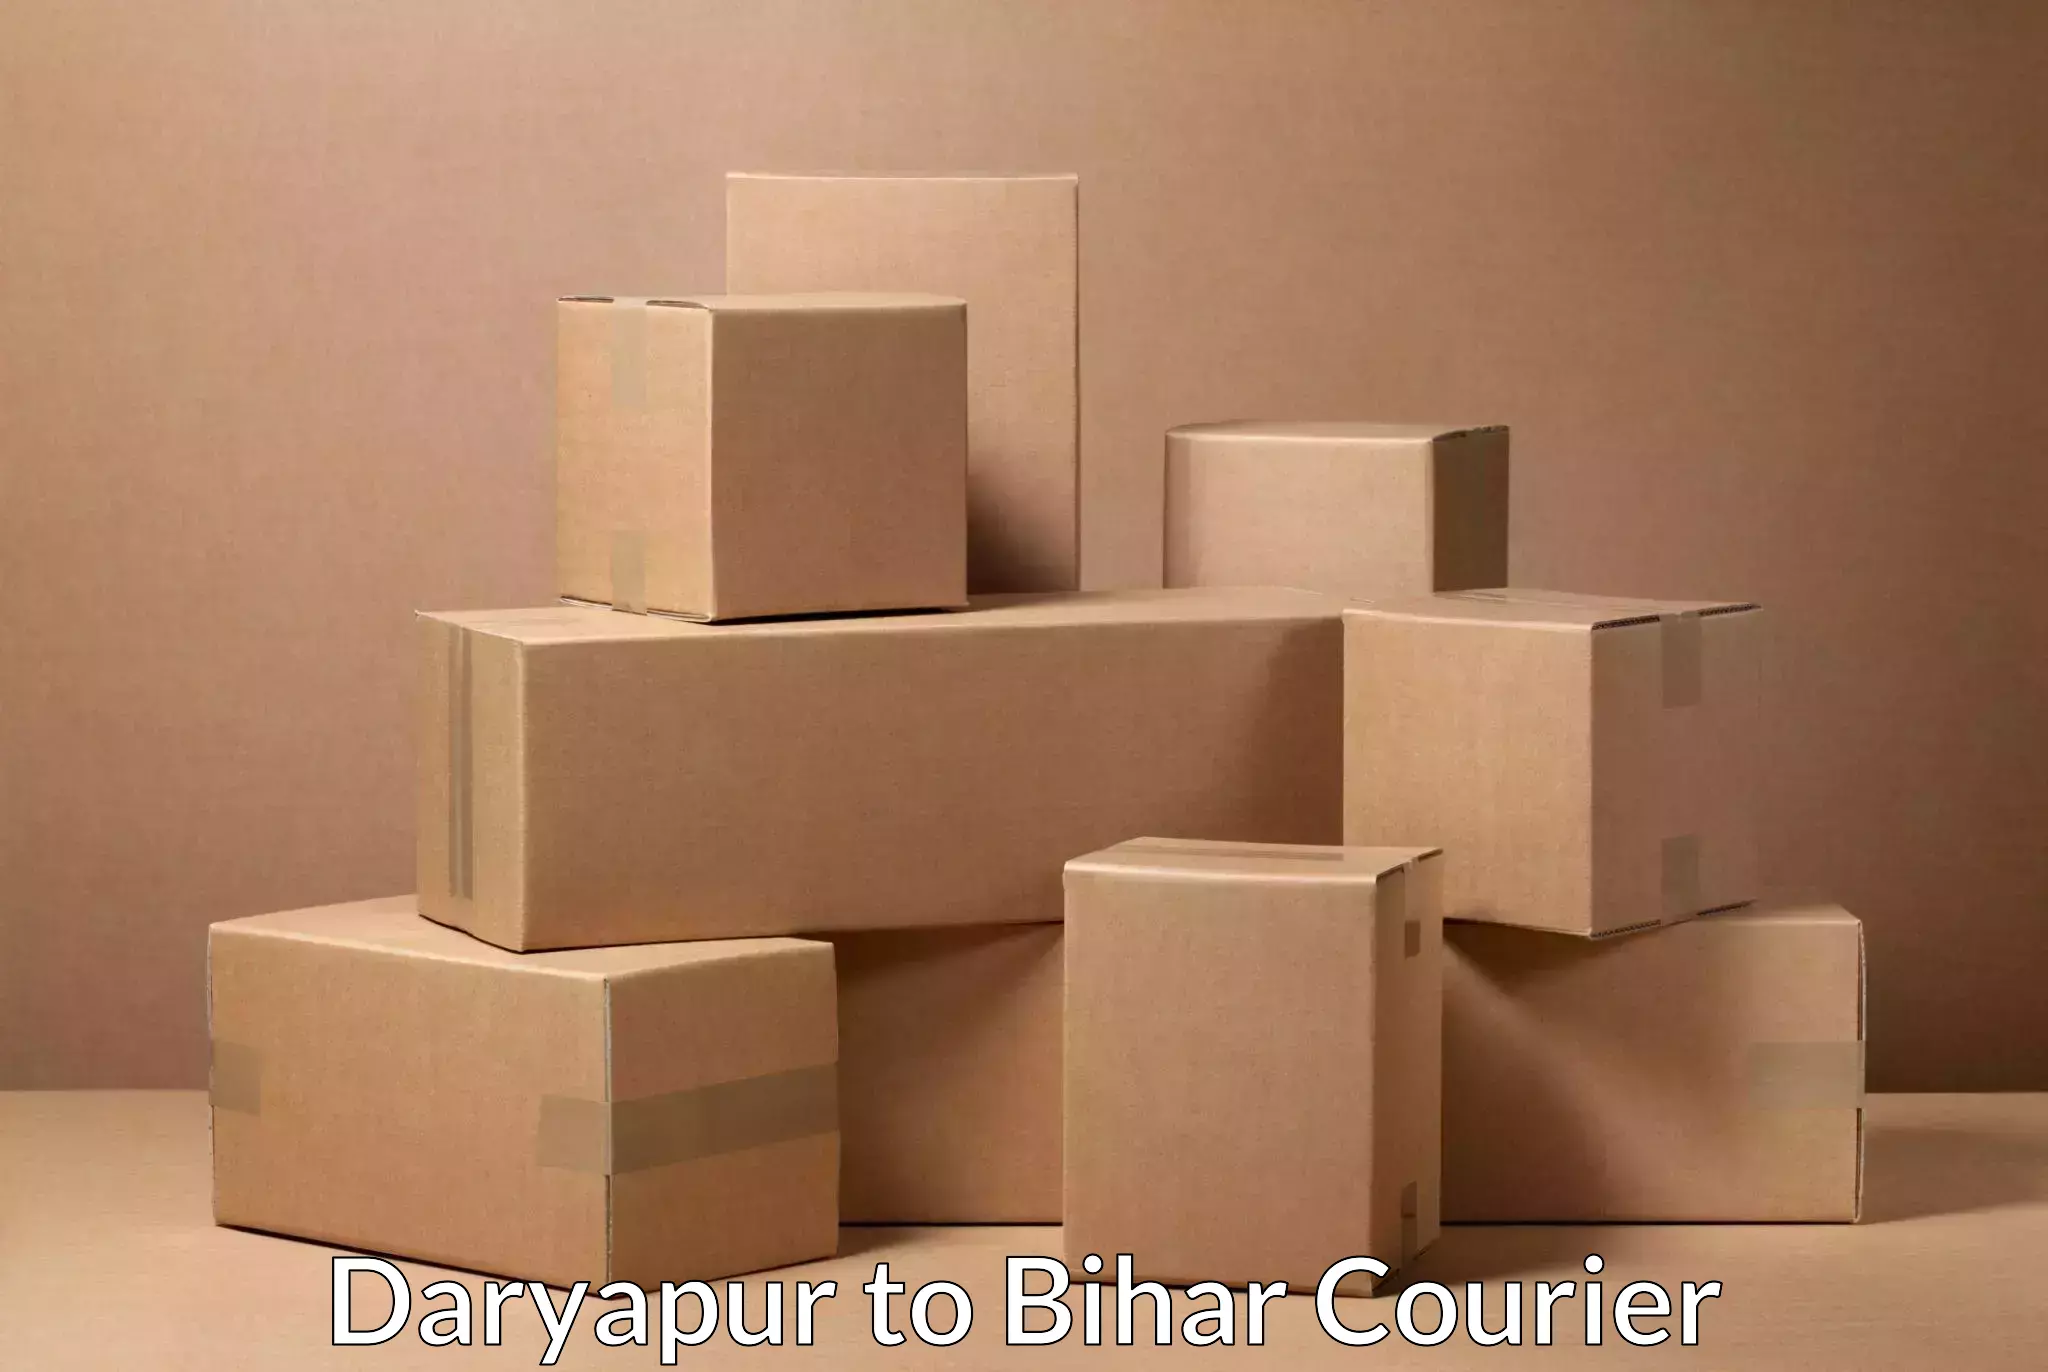 On-demand shipping options Daryapur to Rajgir